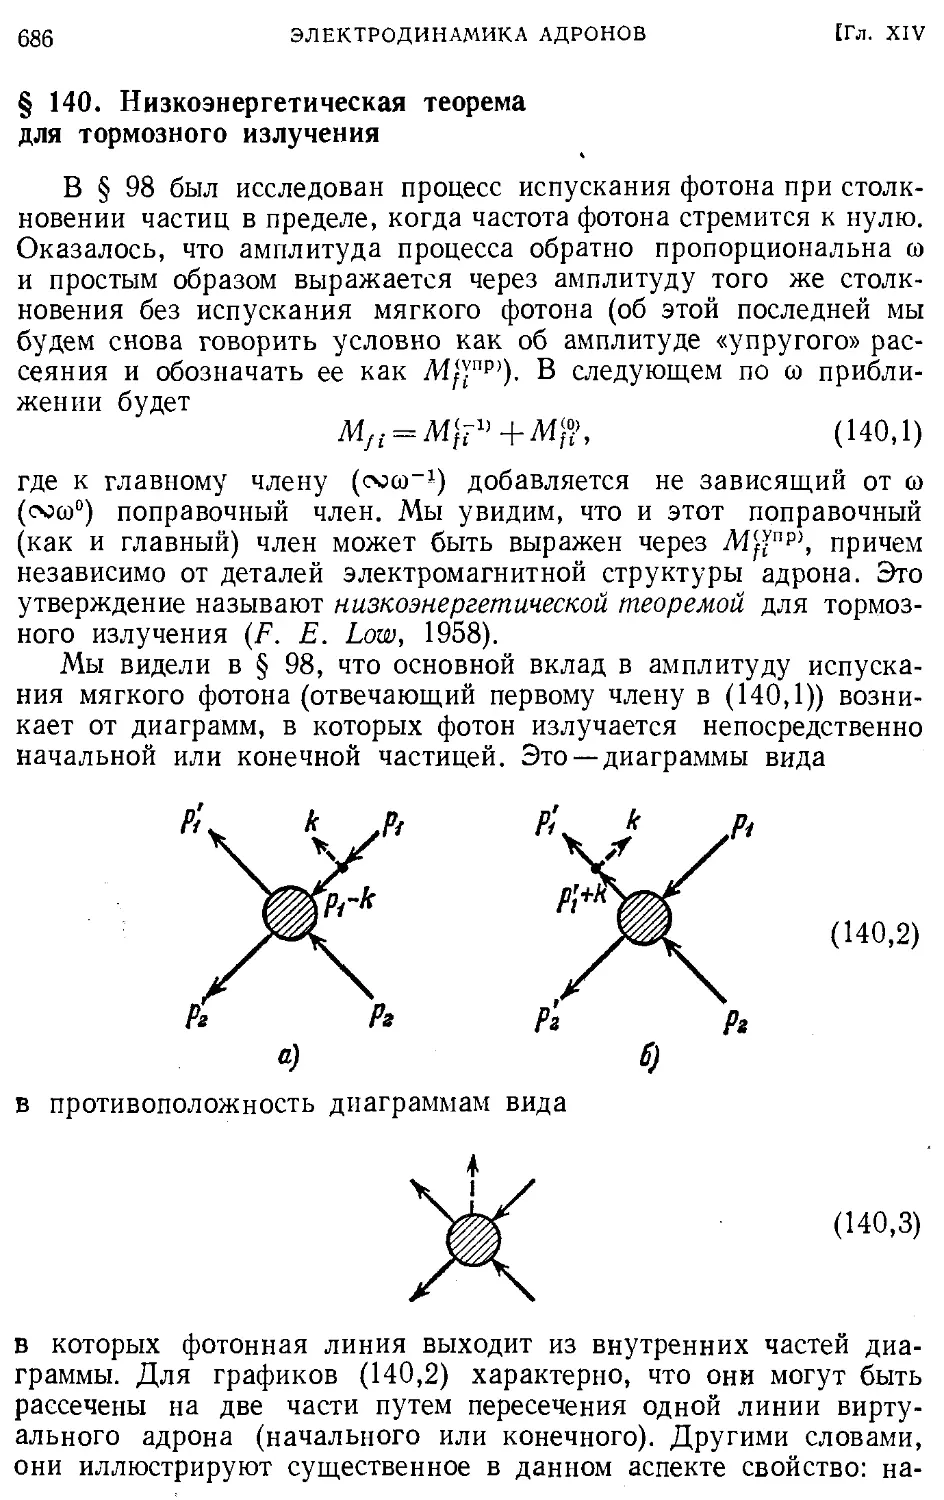 § 140. Низкоэнергетическая теорема для тормозного излучения